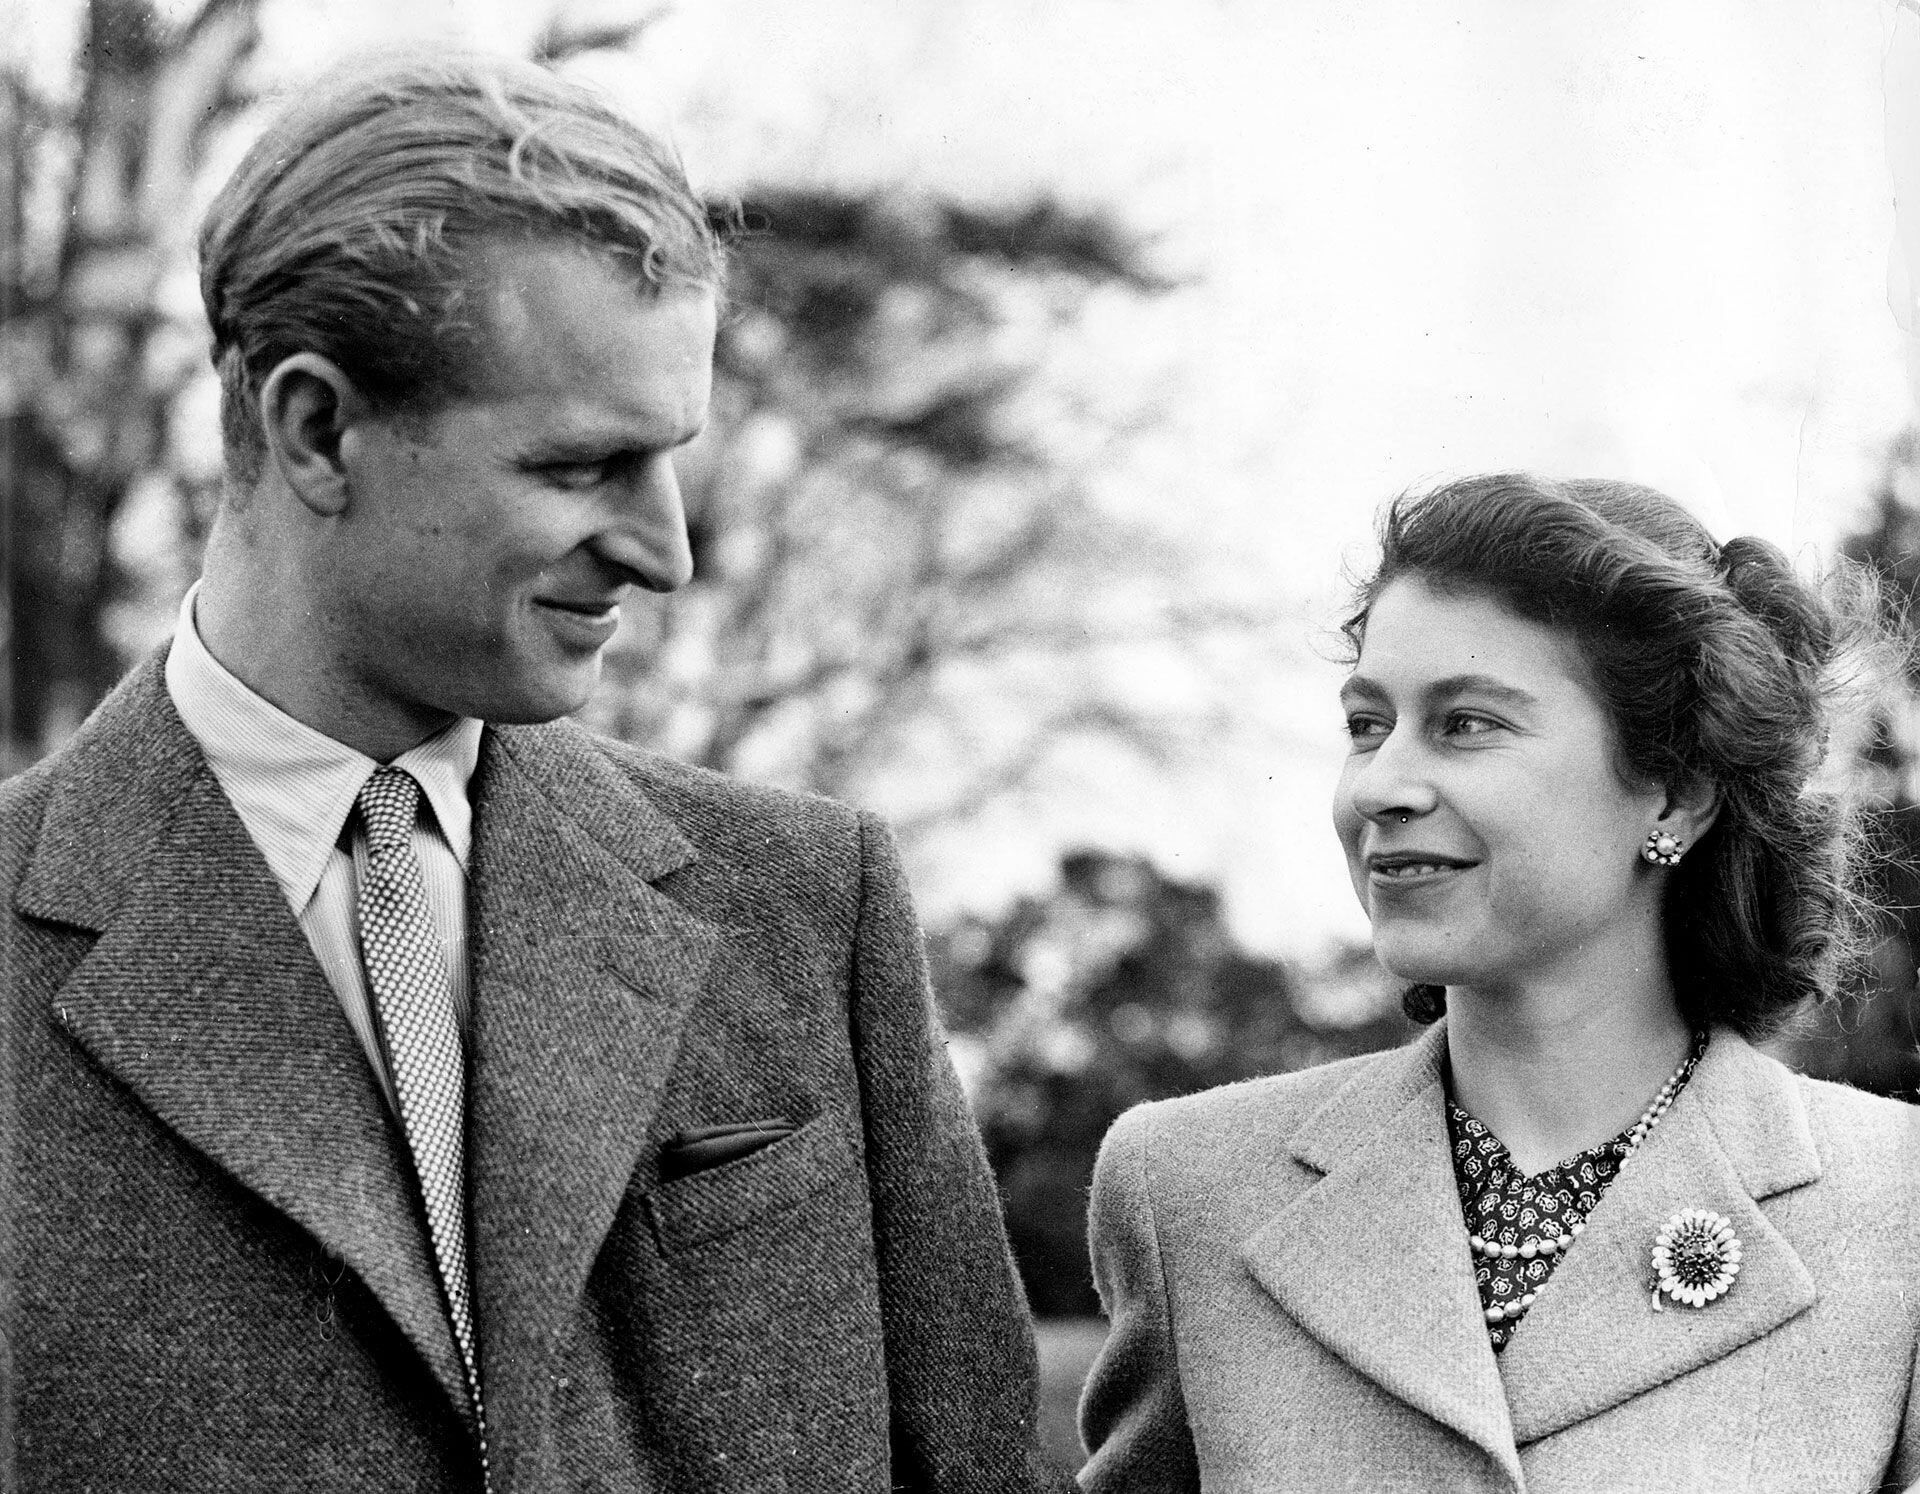 Felipe mantuvo correspondencia con Isabel durante toda la II Guerra Mundial, mientras servía en la Marina británica, y sin hacer demasiado caso de otros pretendientes, ella lo esperó hasta su regreso